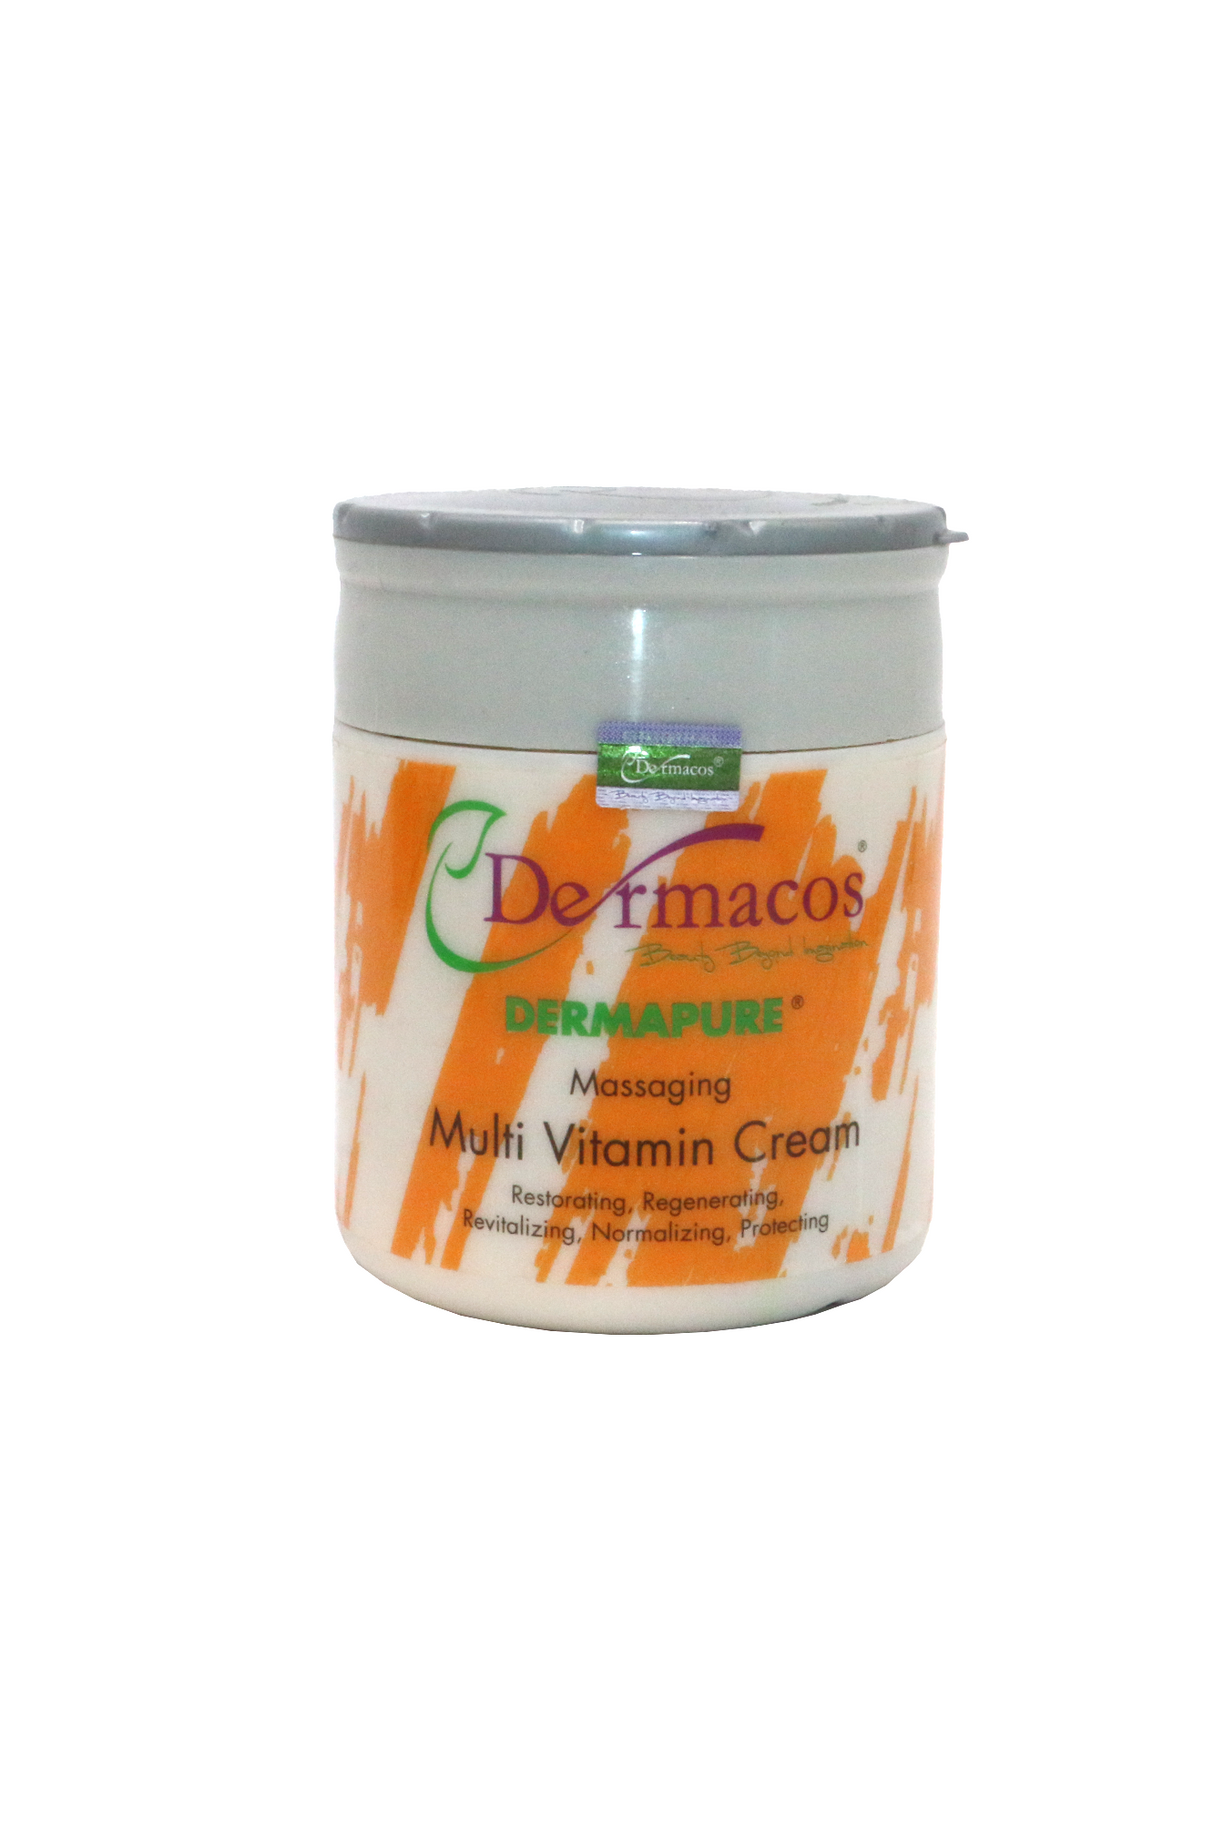 dermacos multi vitamin cream 500g